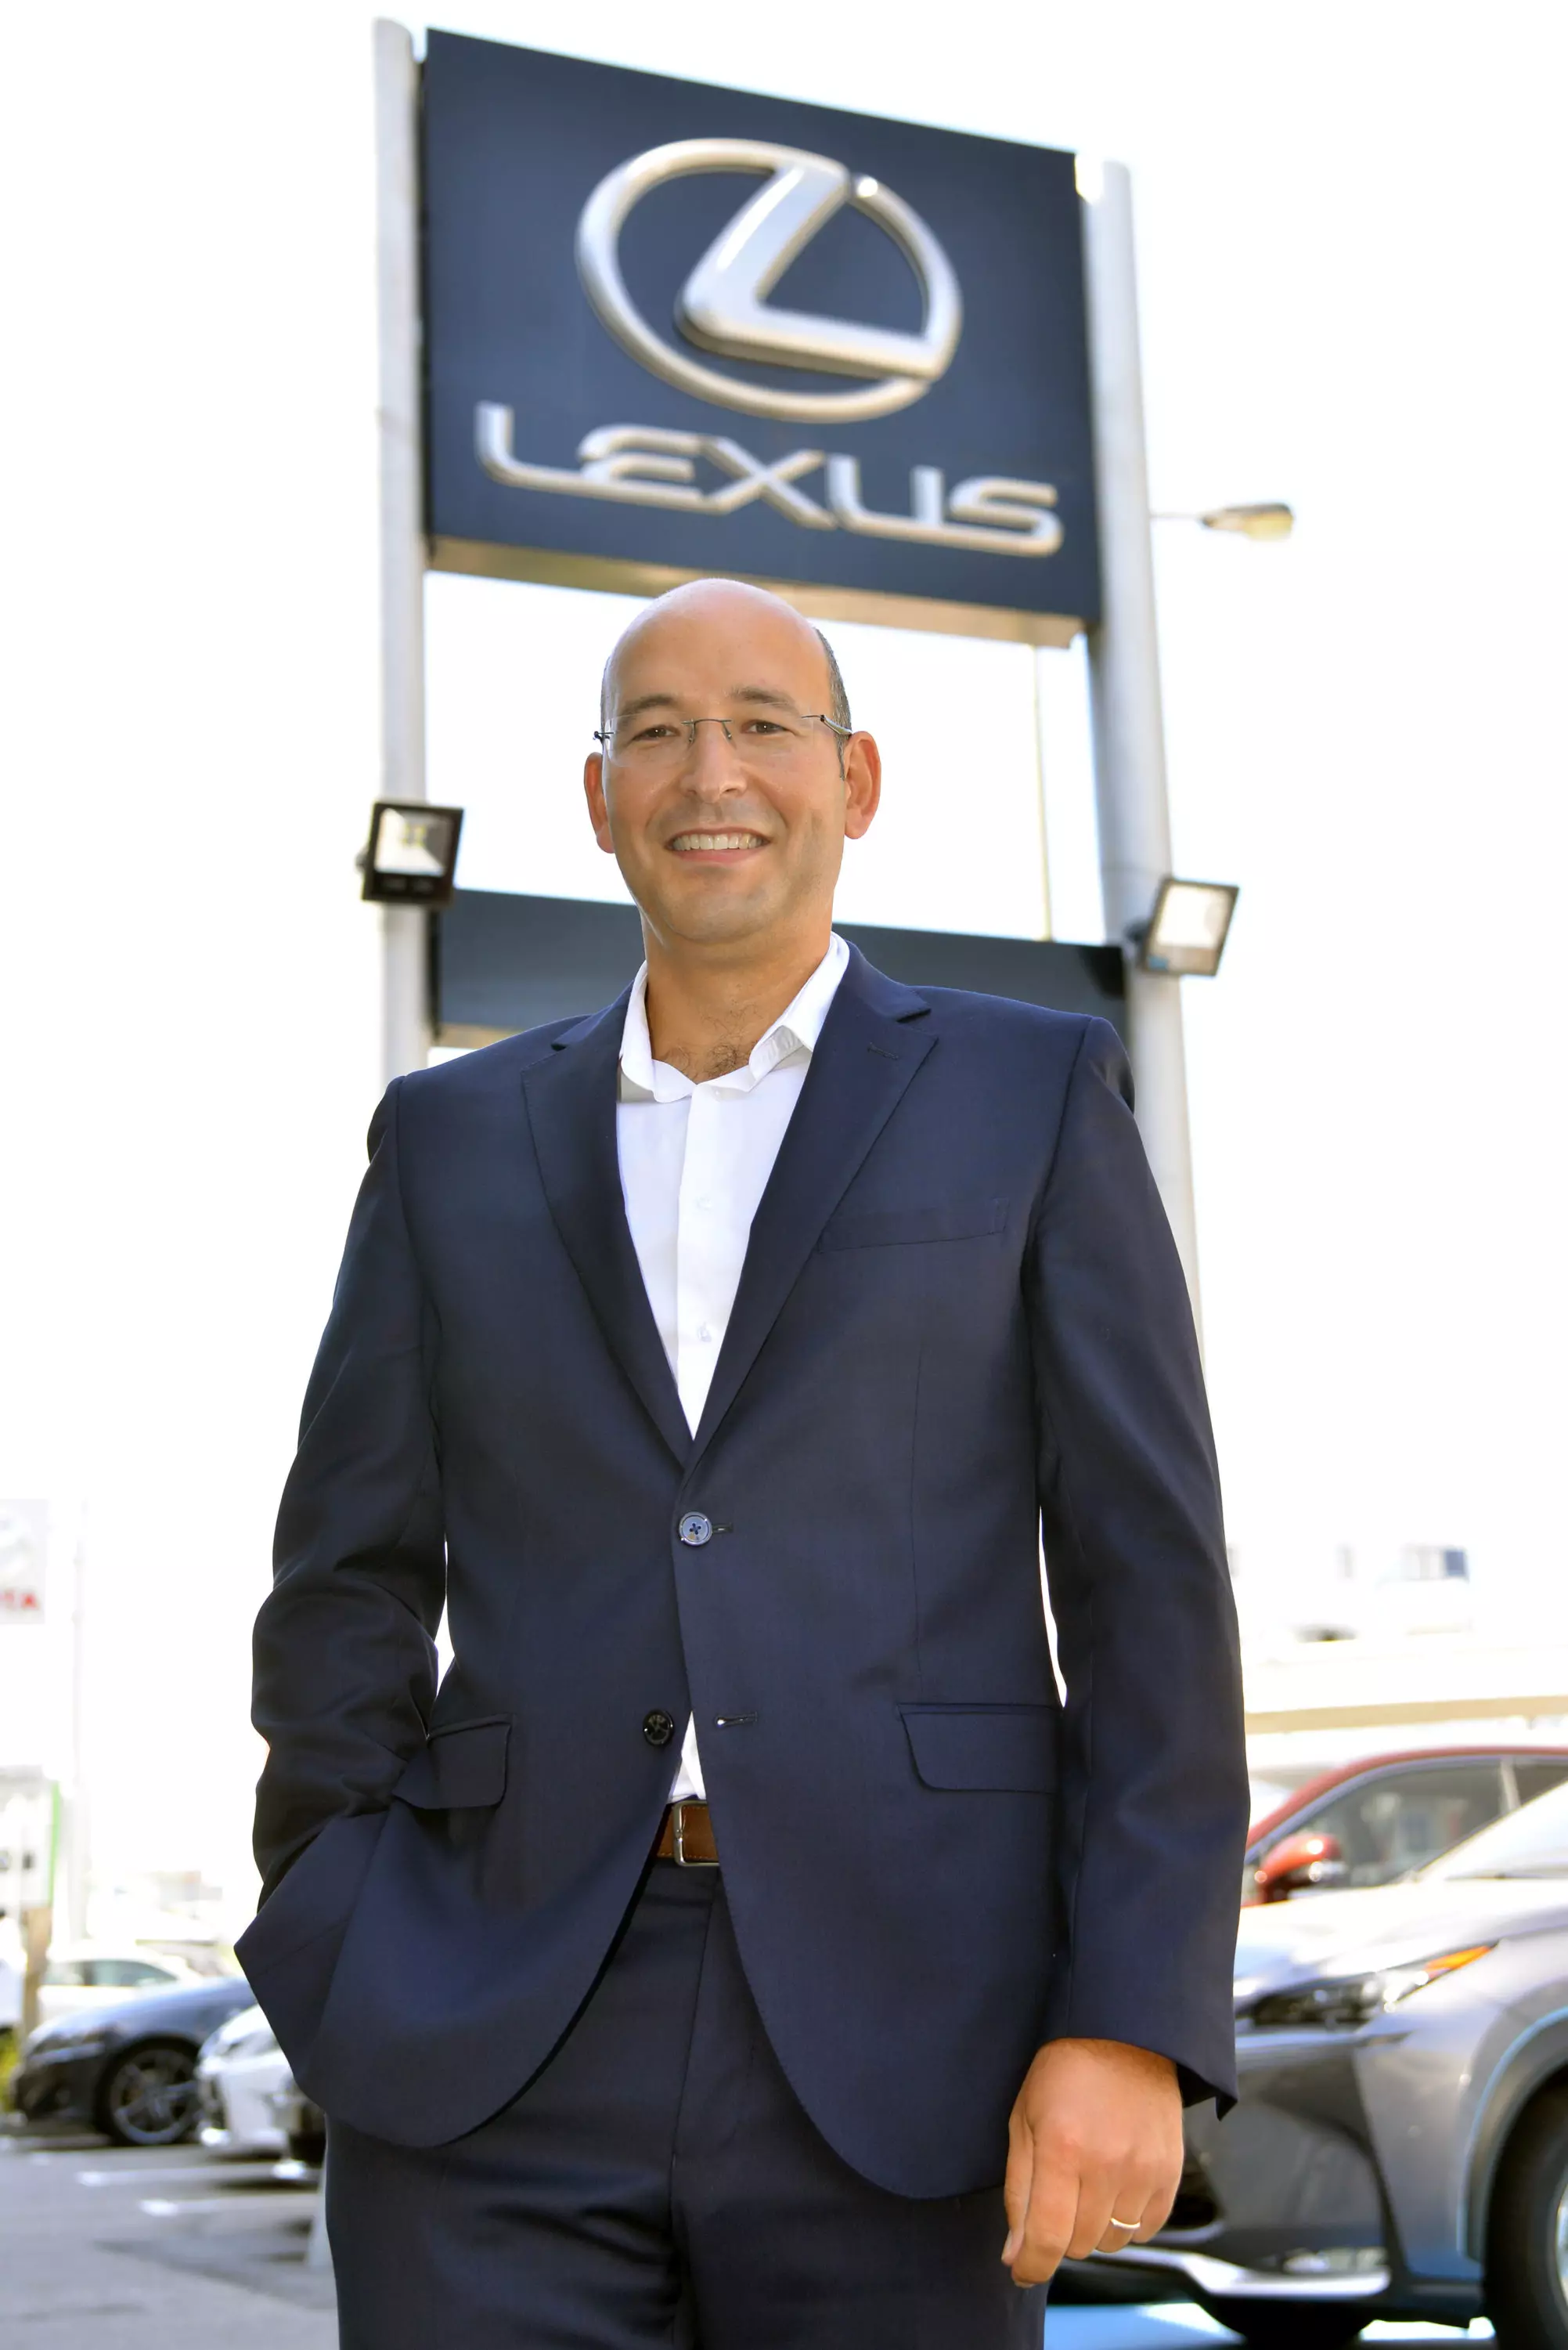 Victor Marques, Direktor ng Komunikasyon sa Lexus Portugal